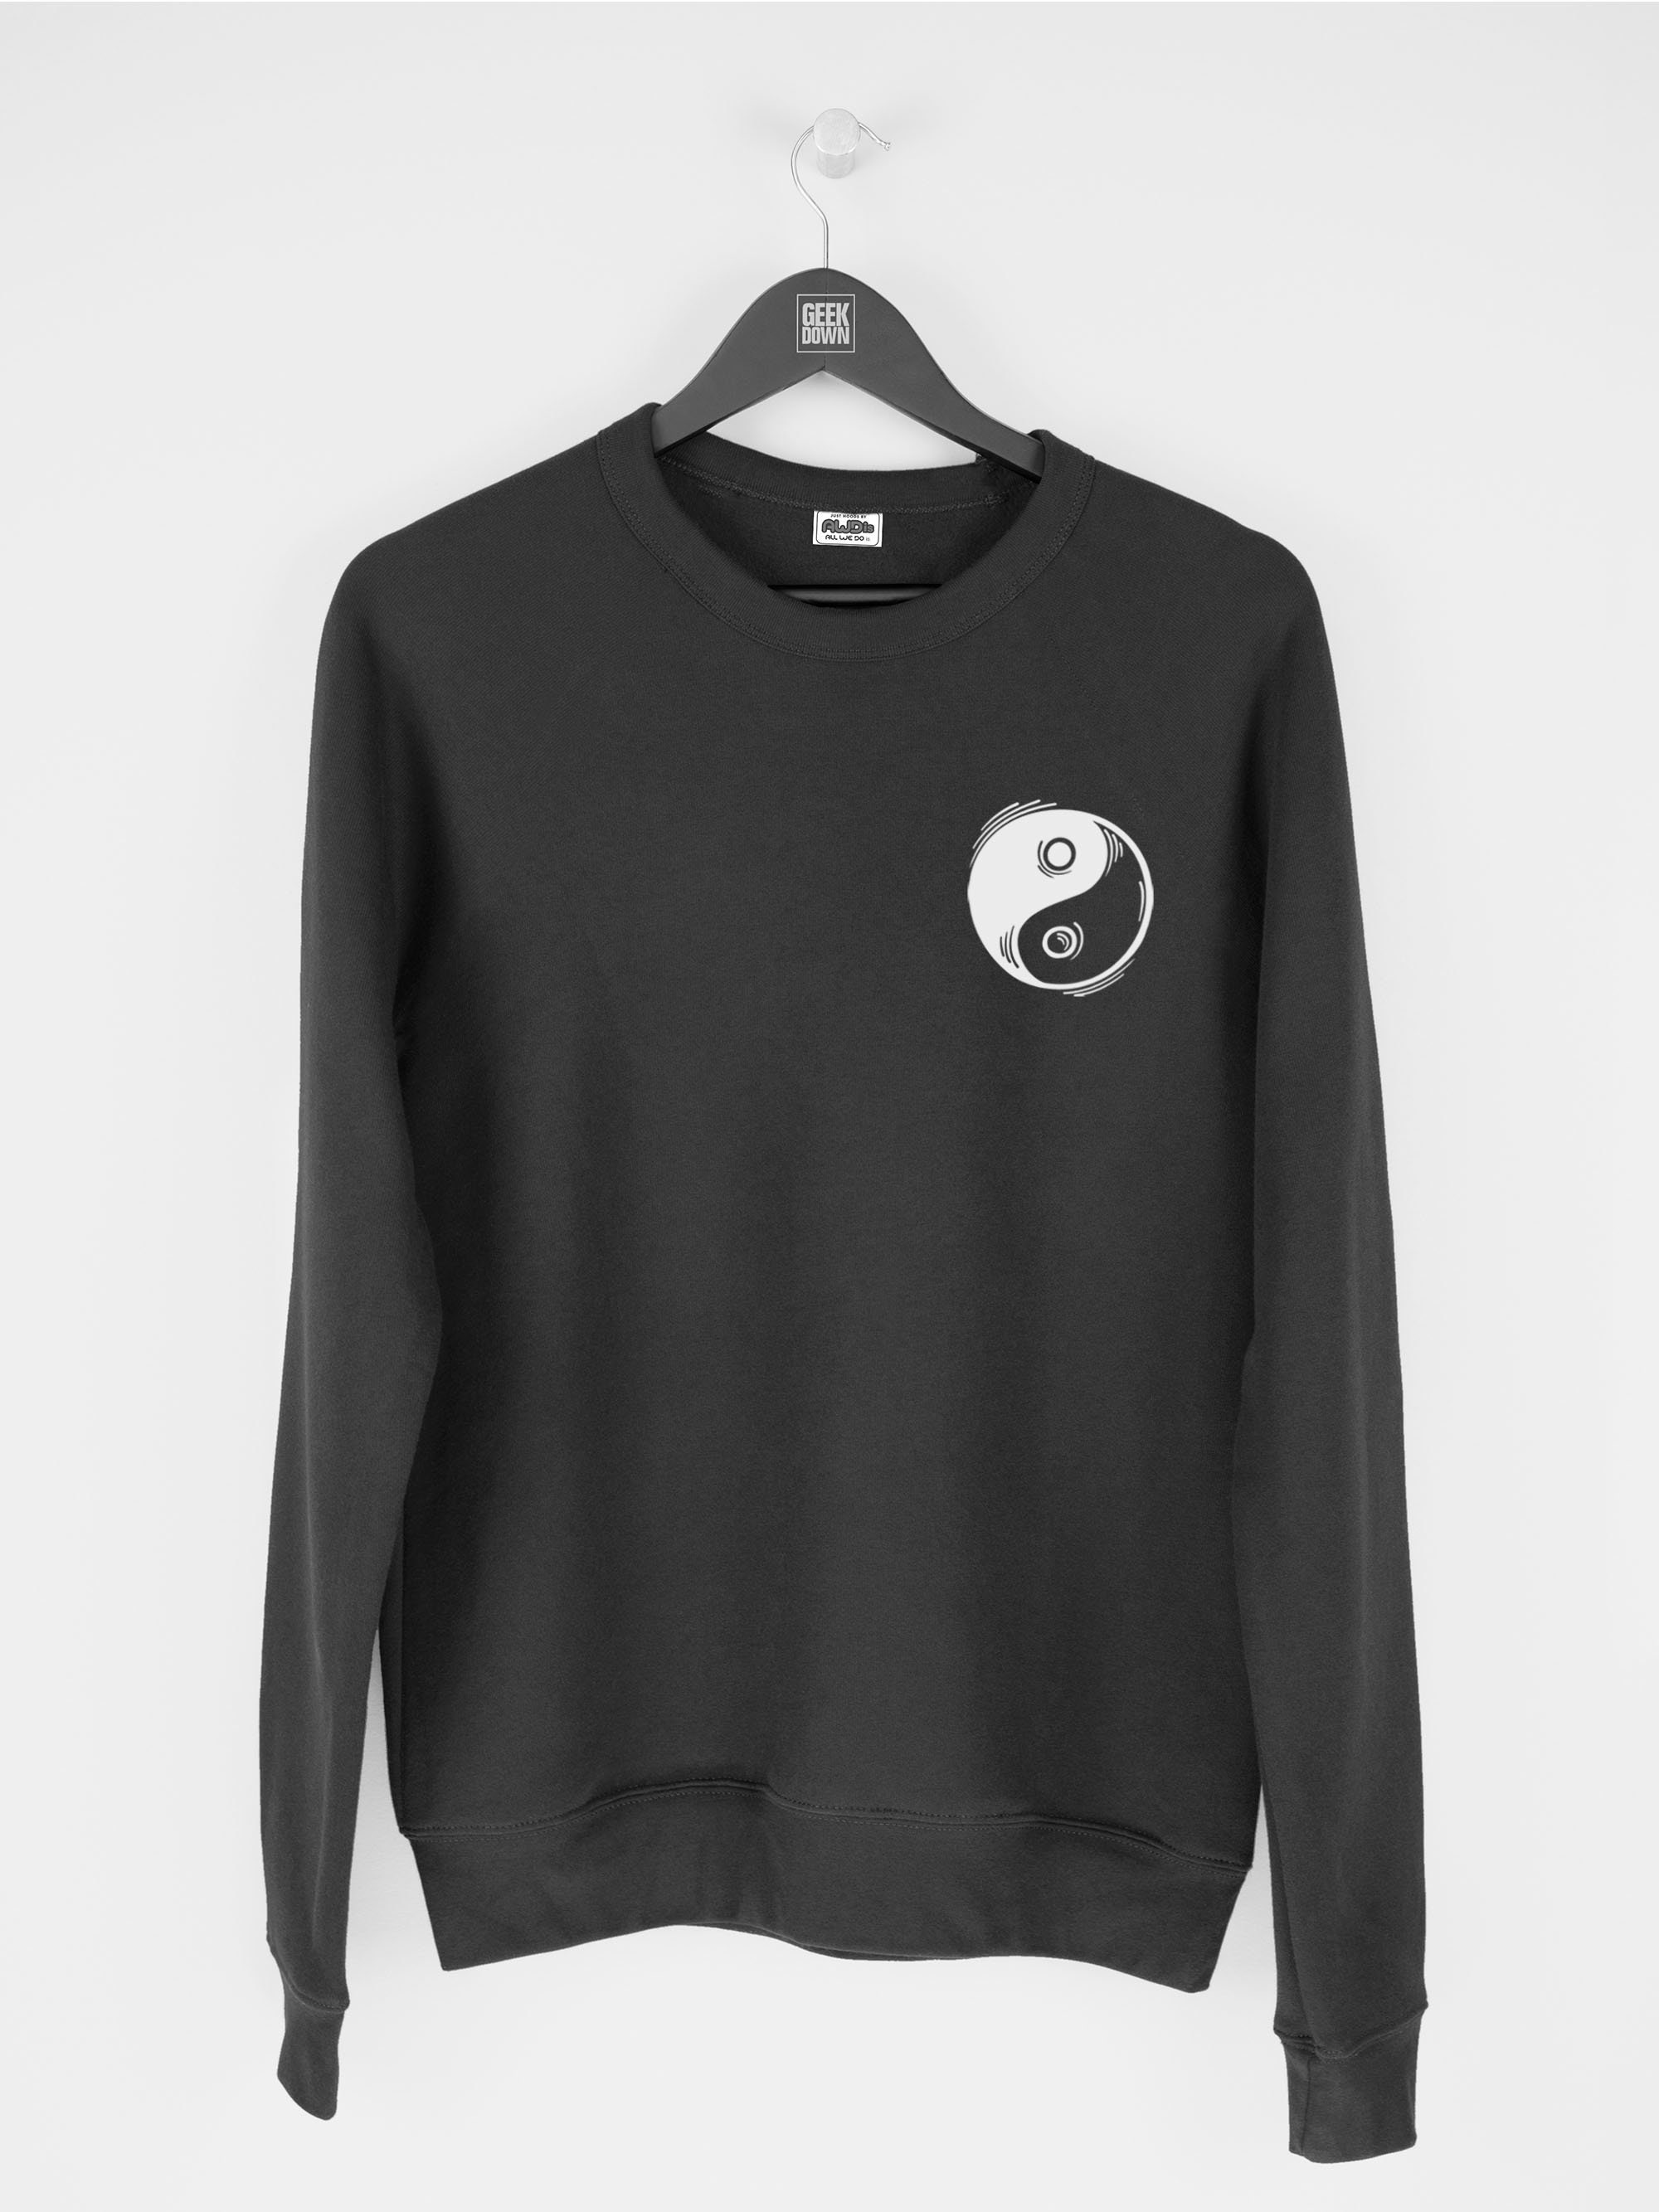 Yin Yang sweatshirt jumper sweatshirts / Women Sweater / | Etsy